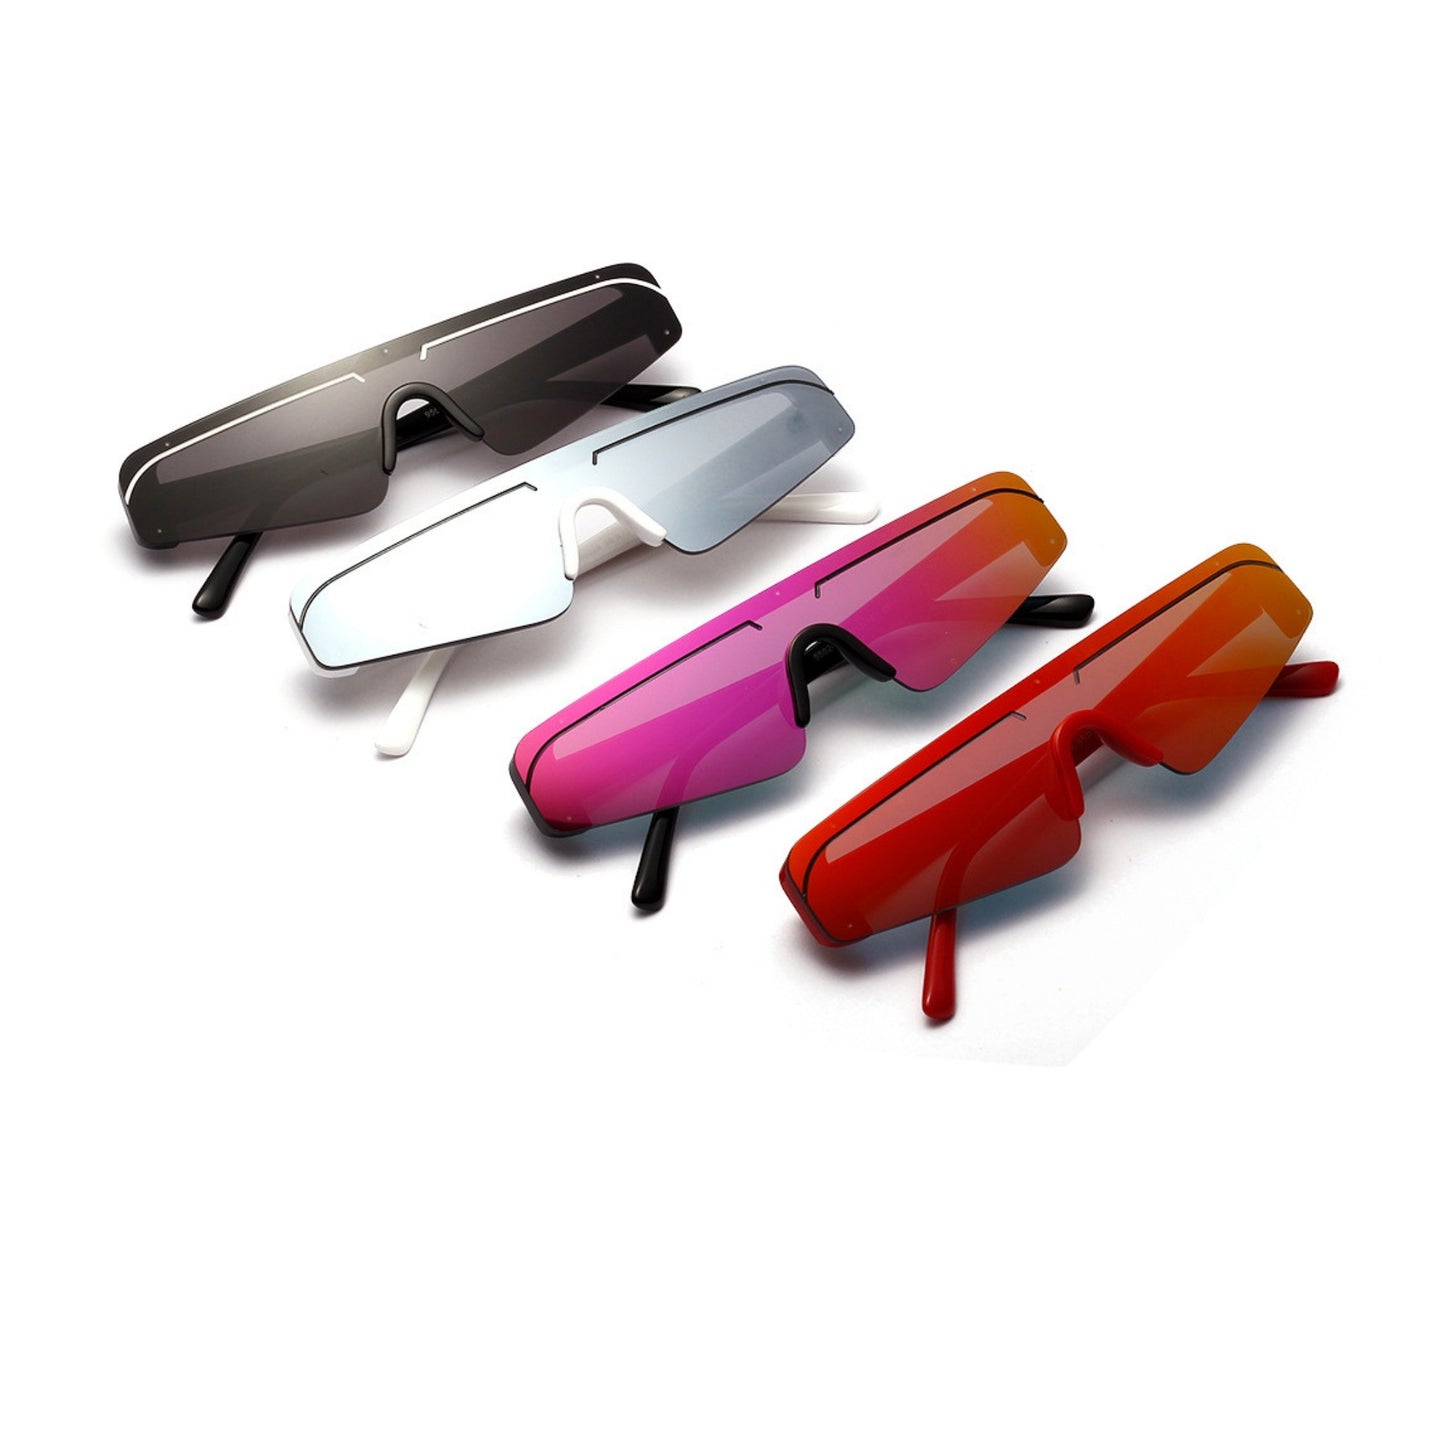 Γυαλιά ηλίου (Μάσκα) Miami της Exposure Sunglasses με προστασία UV400 σε διάφορα χρώματα.